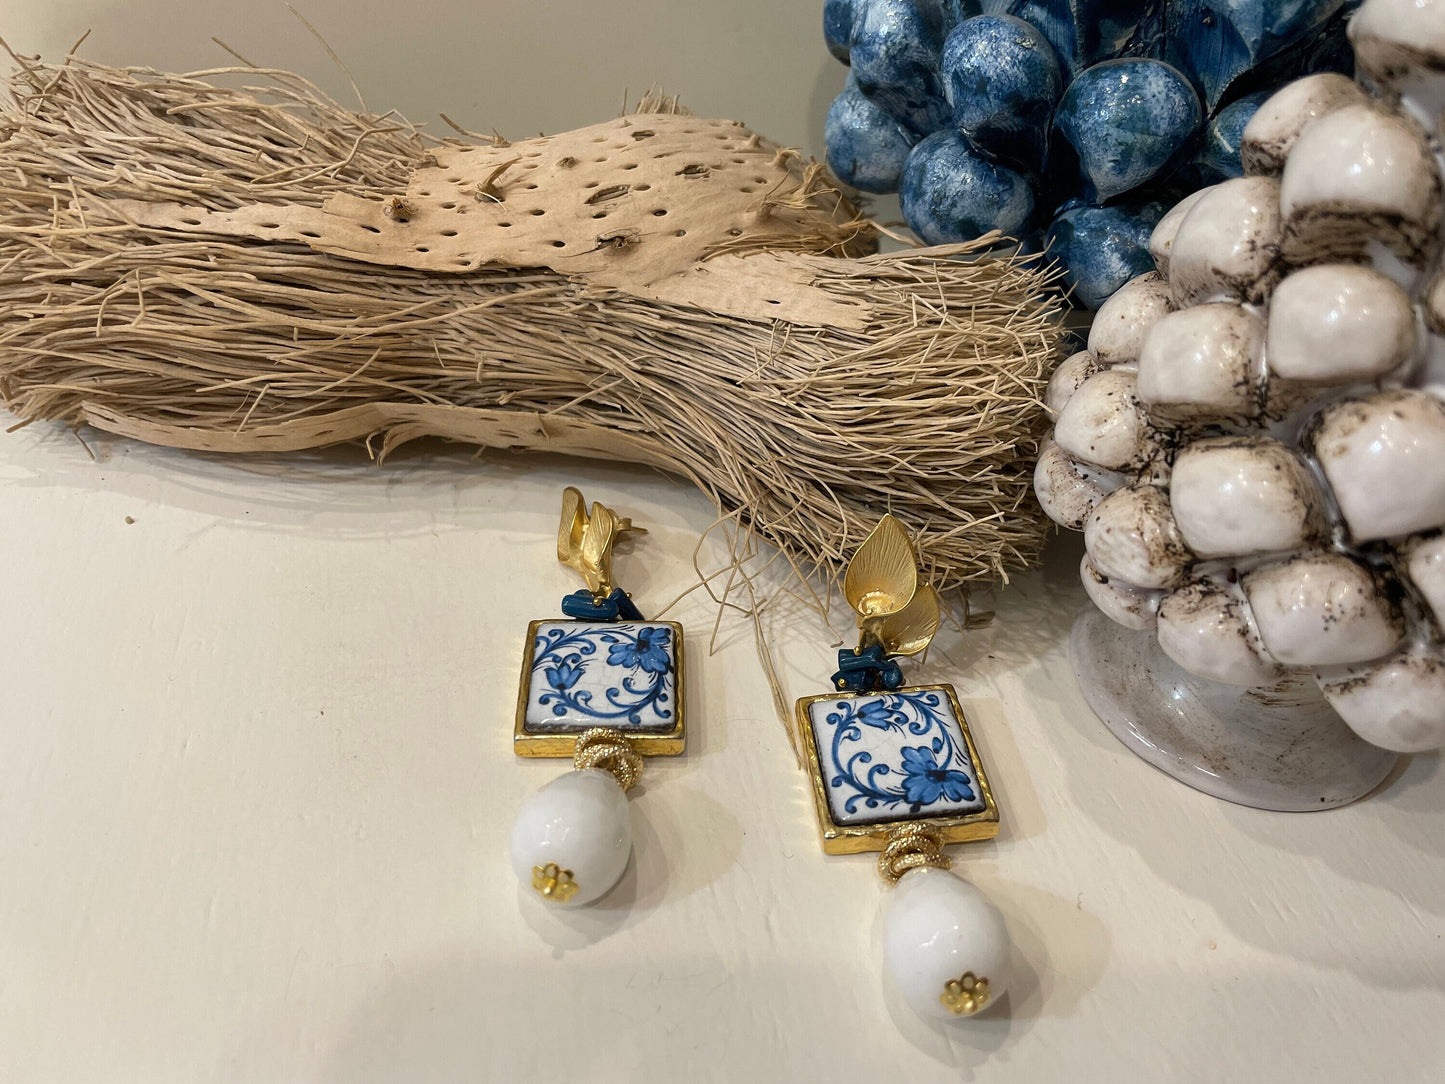 Orecchini siciliani, mattonella ceramica di Caltagirone, maiolica floreale, chips blu e agata bianca *